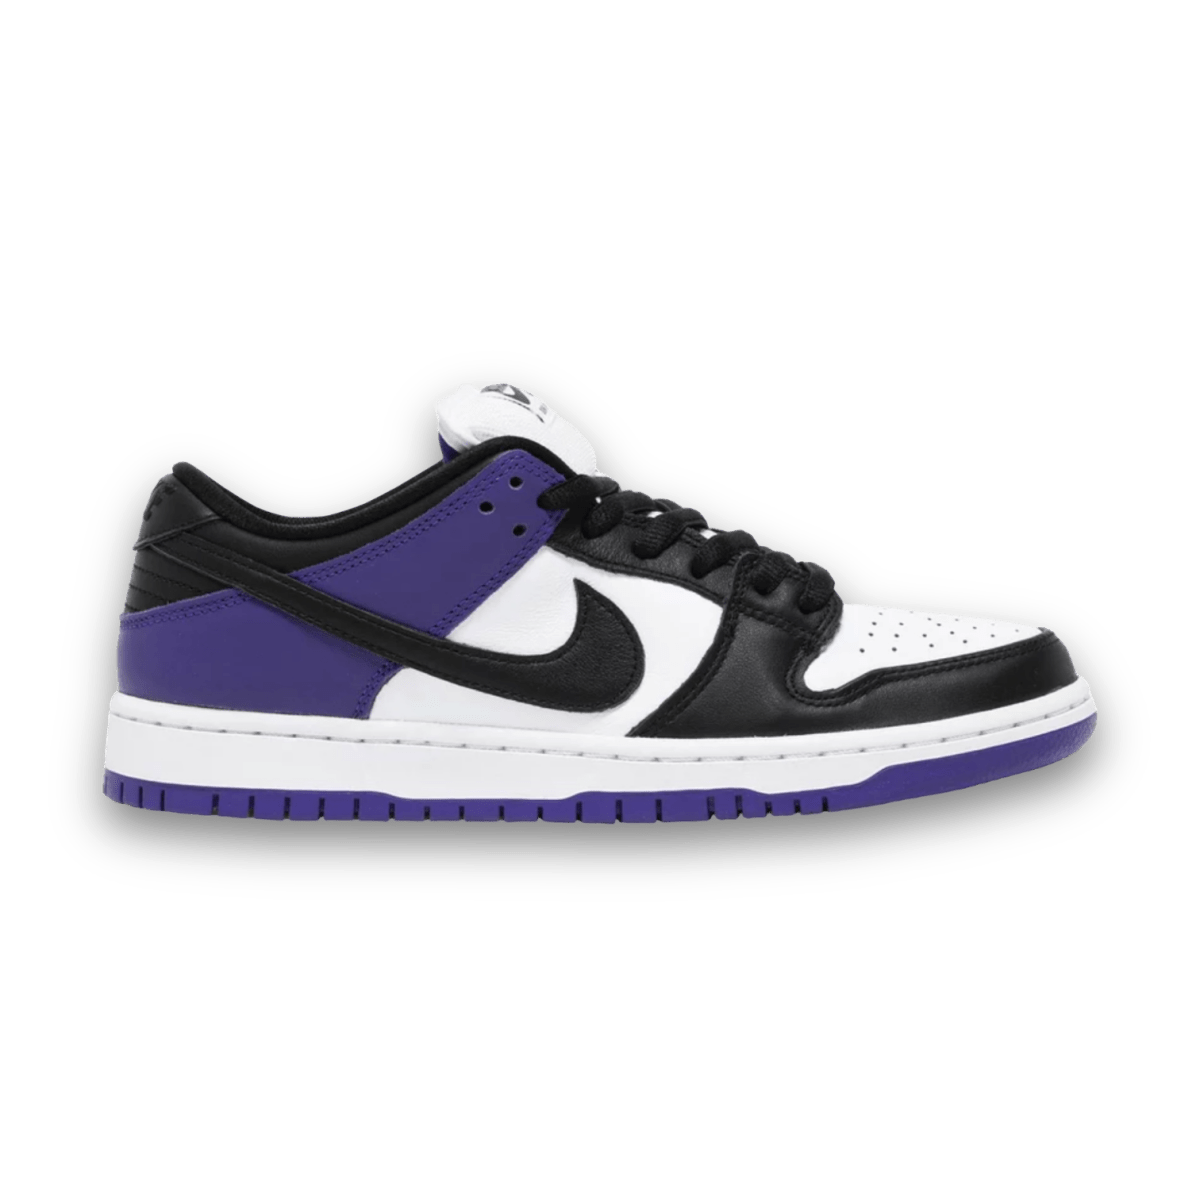 Dunk Low SB 'Court Purple' - Low Sneaker - Jawns on Fire Sneakers & Streetwear